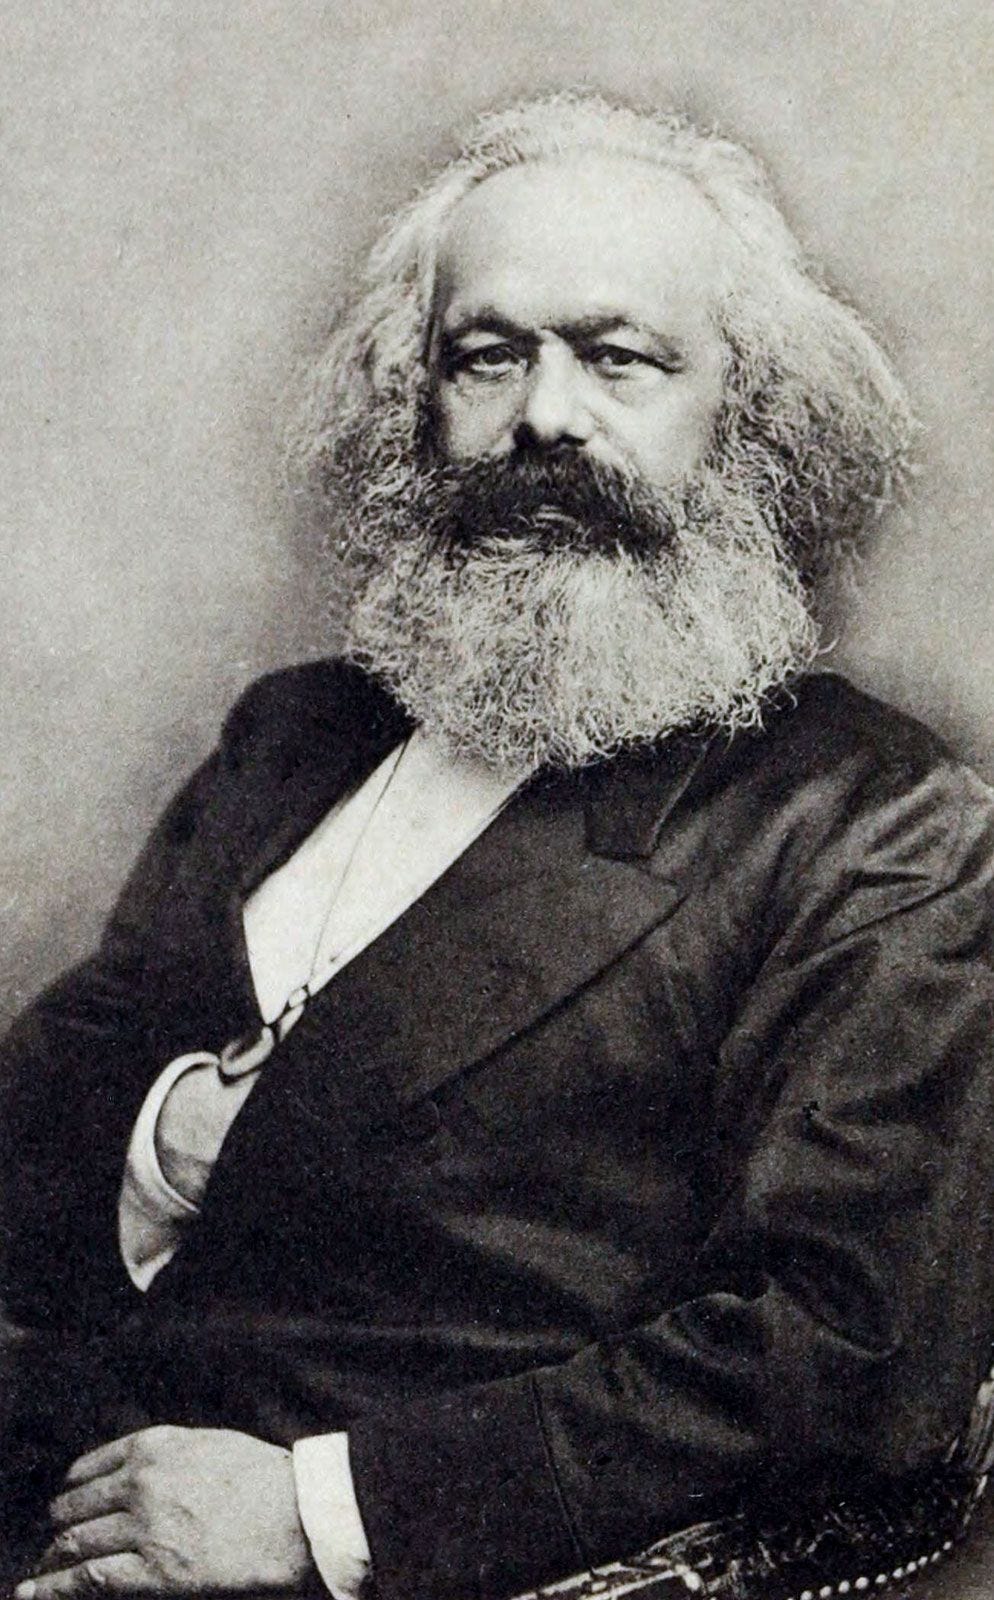 Karl Marx | Books, Theory, Beliefs, Children, Communism, Sociology,  Religion, & Facts | Britannica